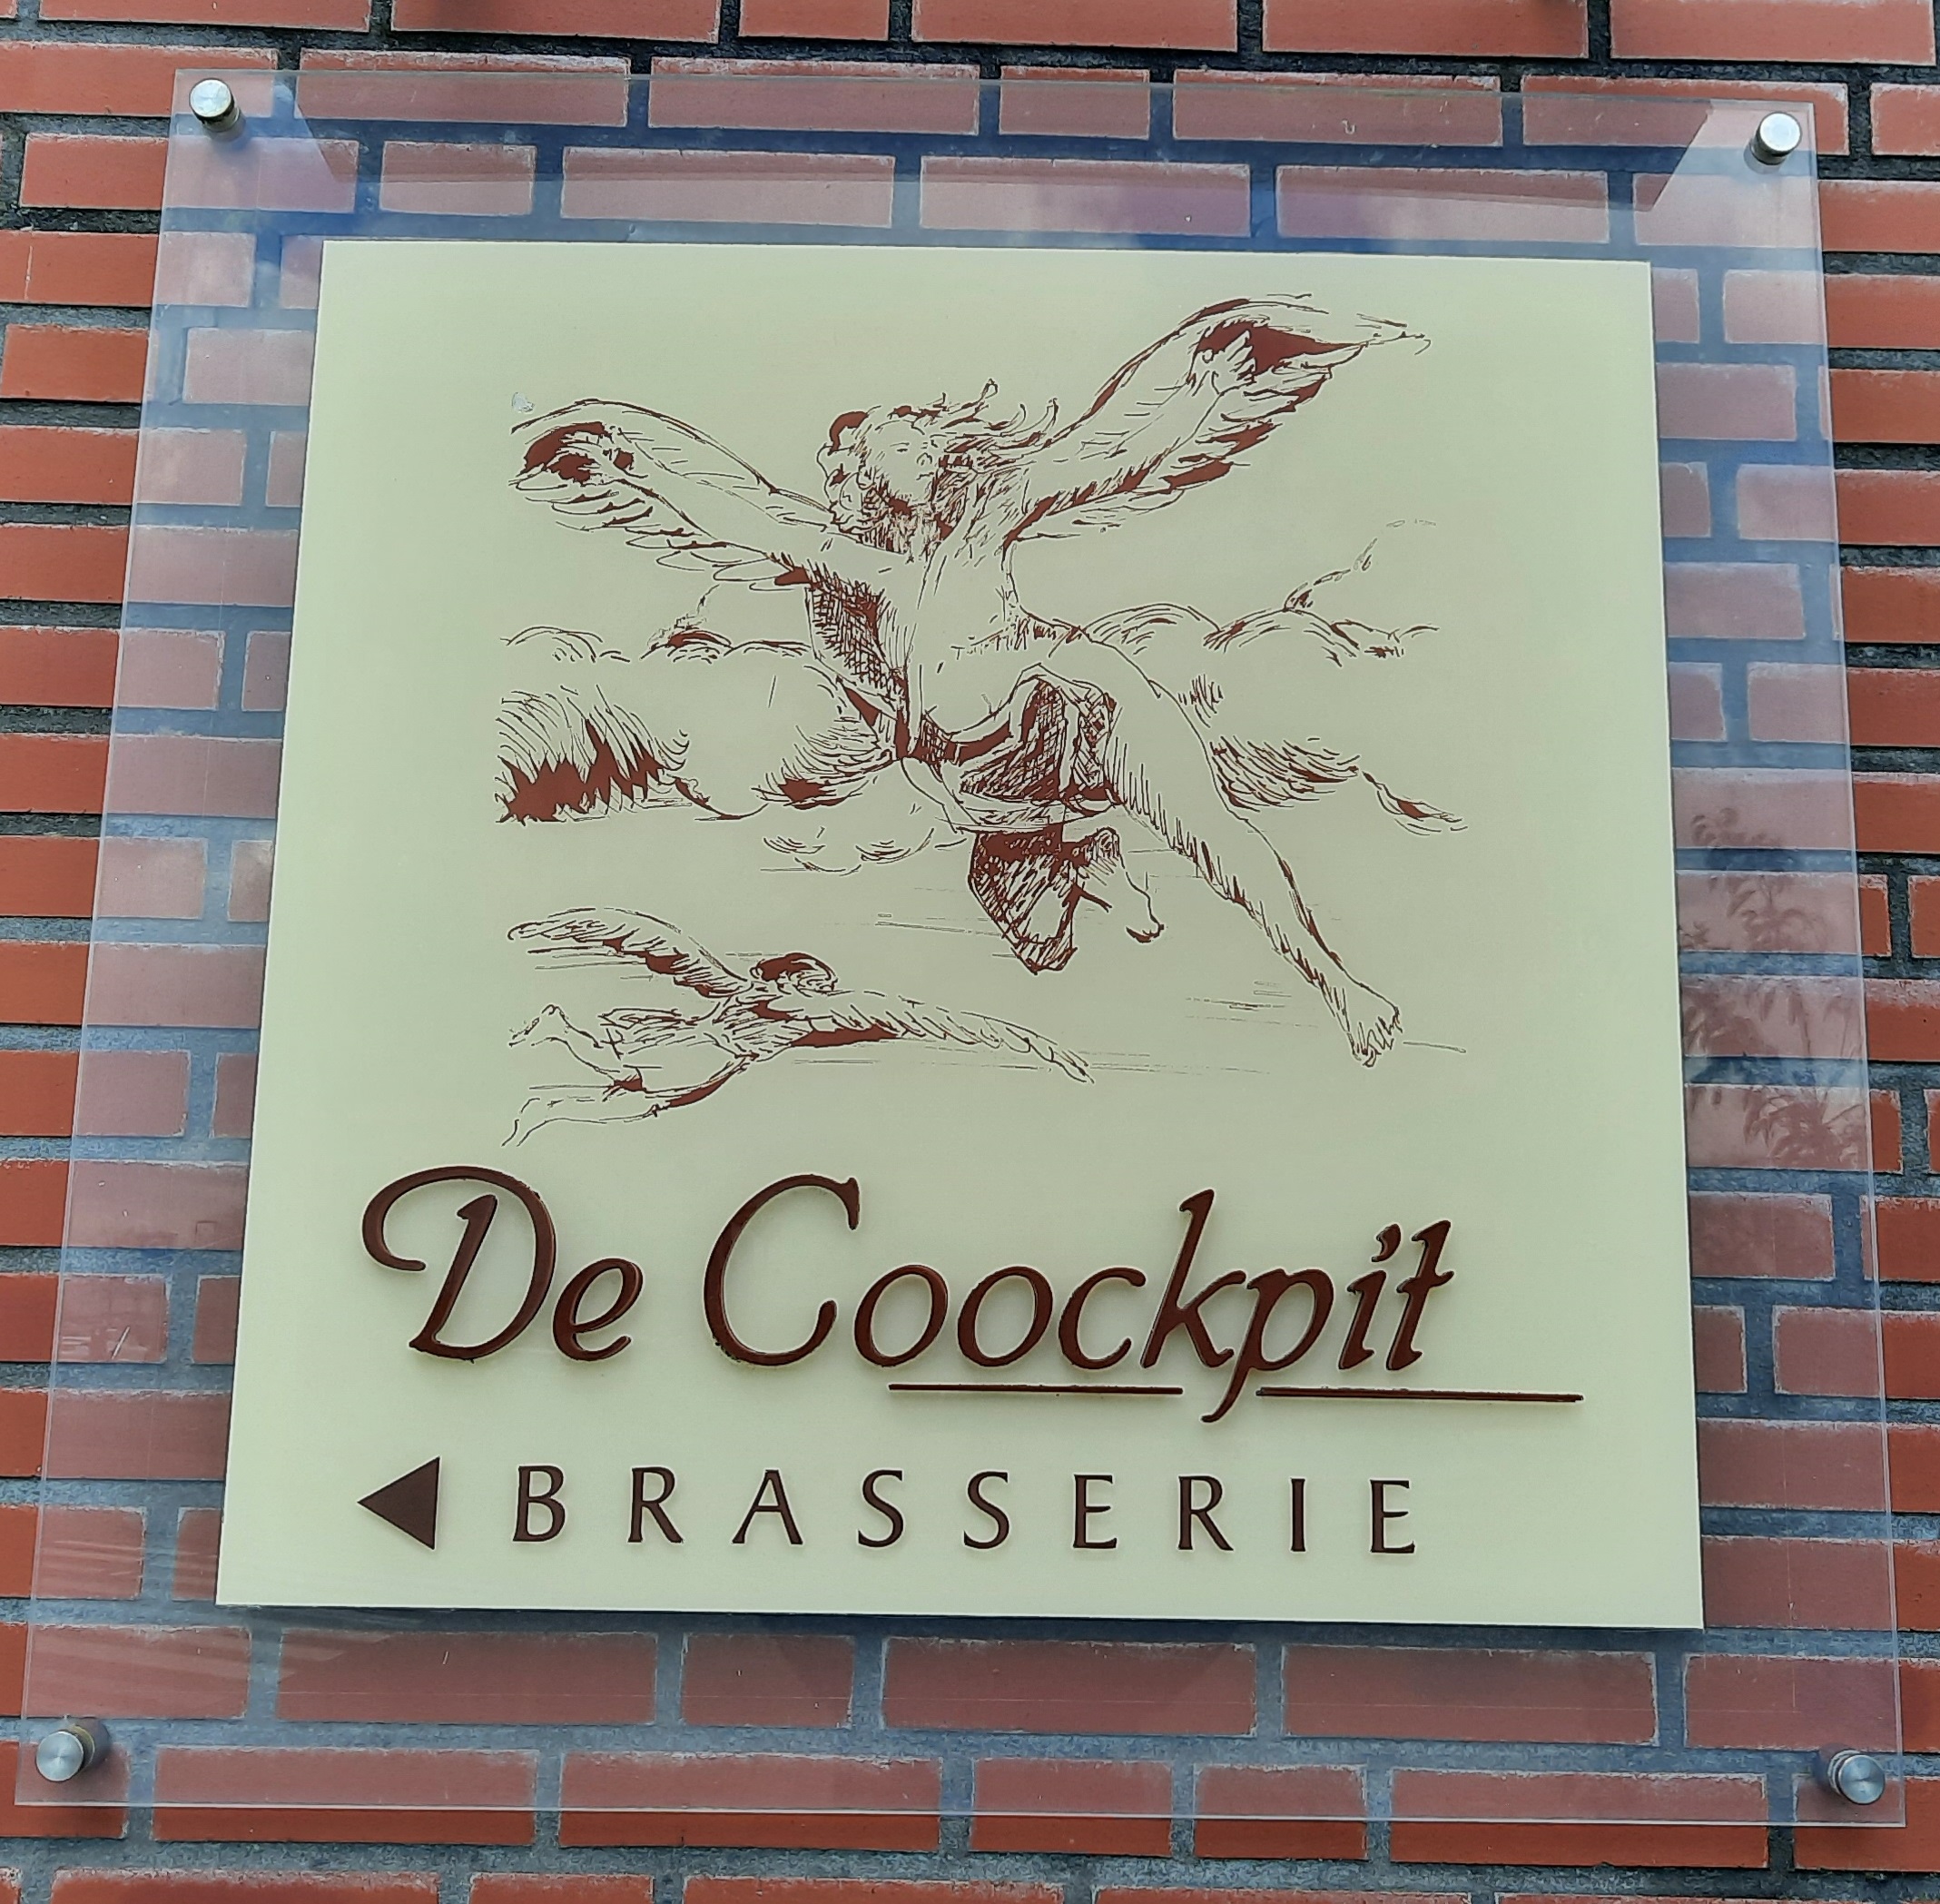 Brasserie Restaurant De Coockpit in Budel